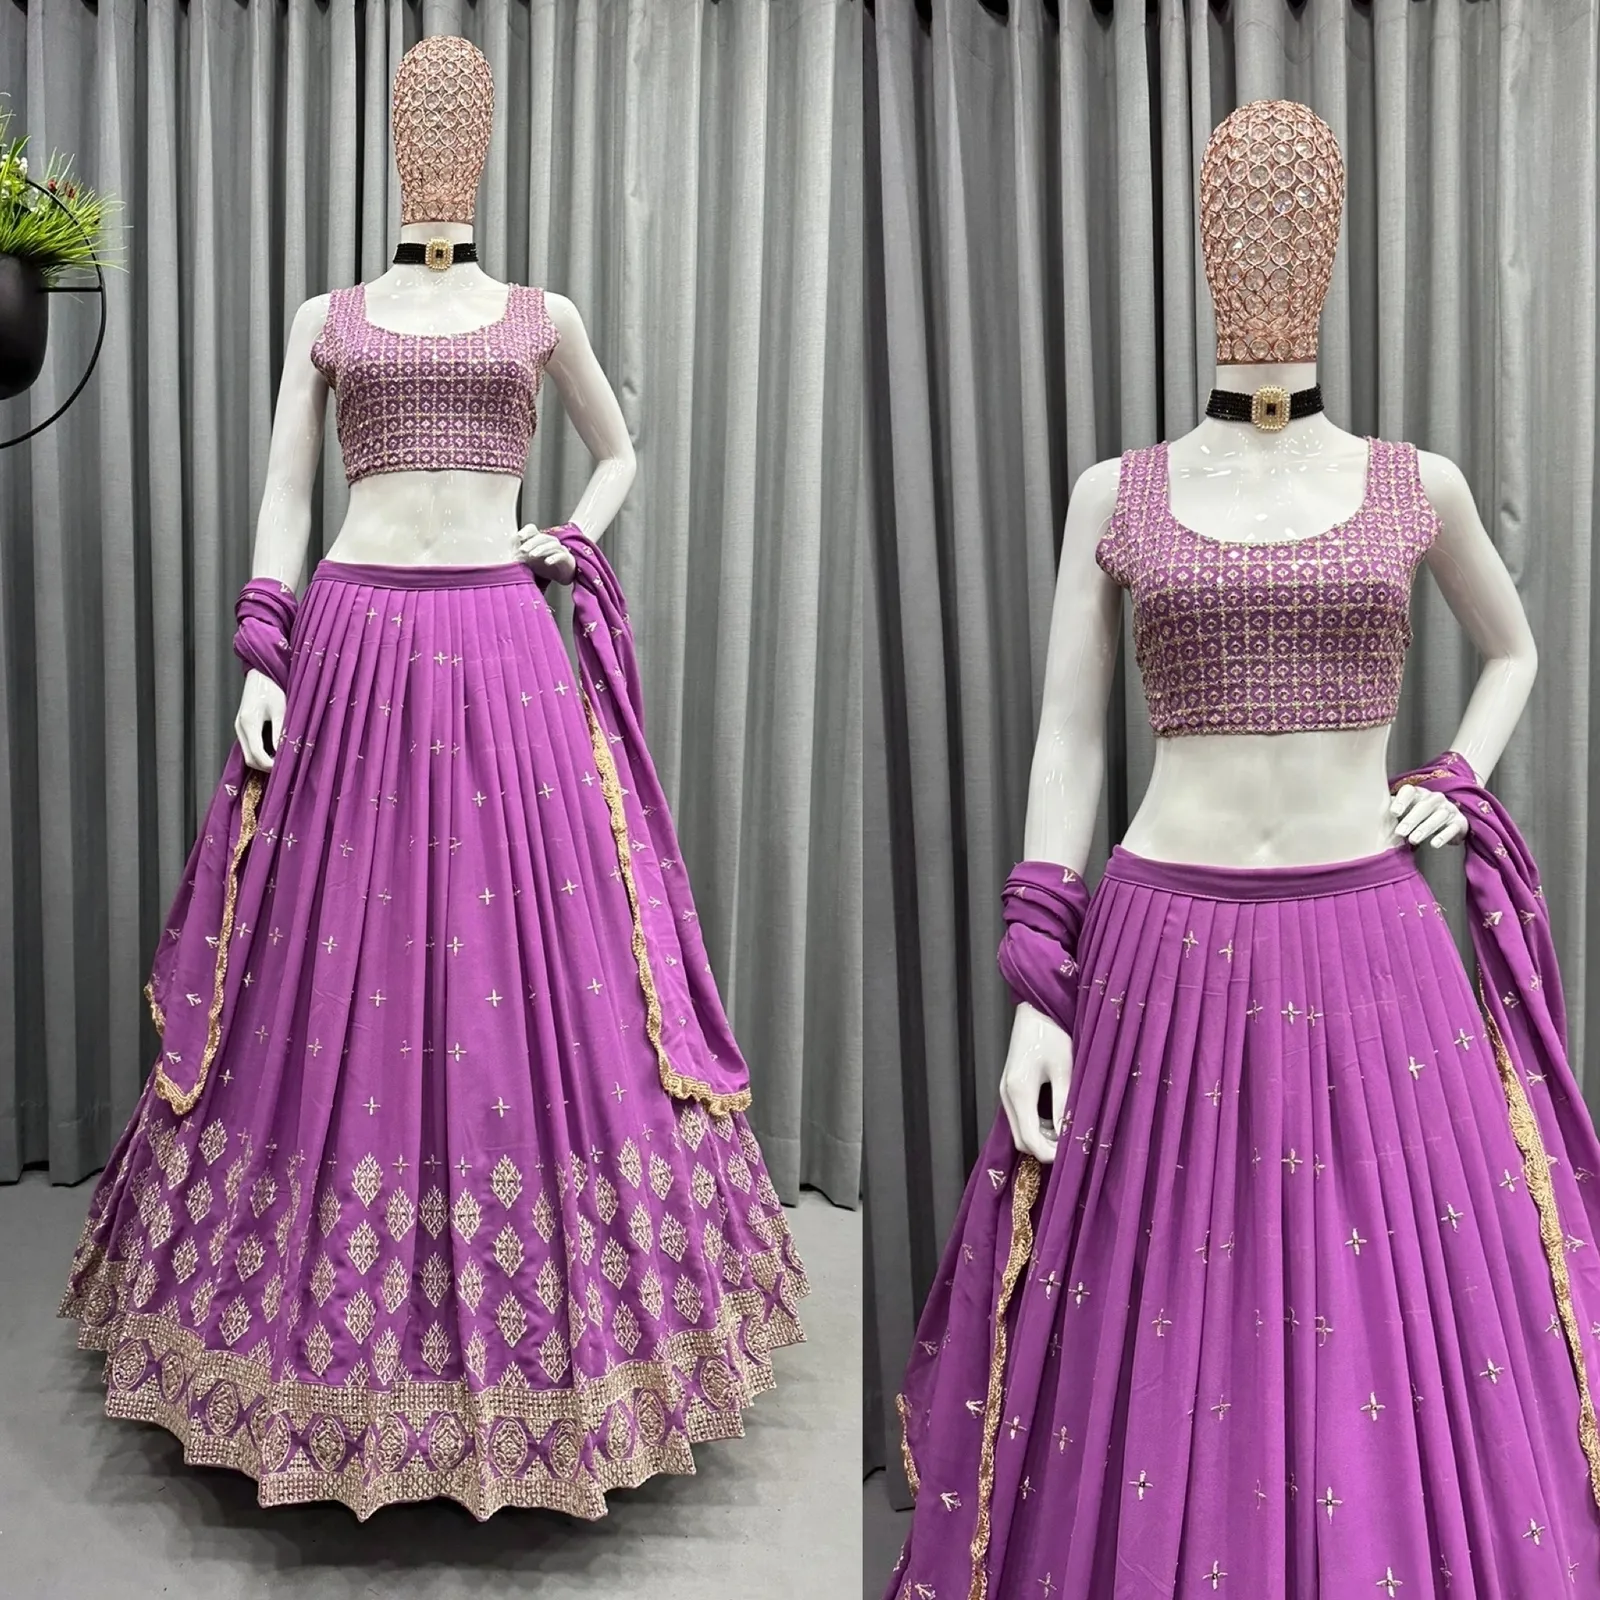 Beste Qualität Indien Ethnische Kleidung Hersteller in indischen LEHENGHA Stoff Gorgette Inner Crep WORK Stickerei